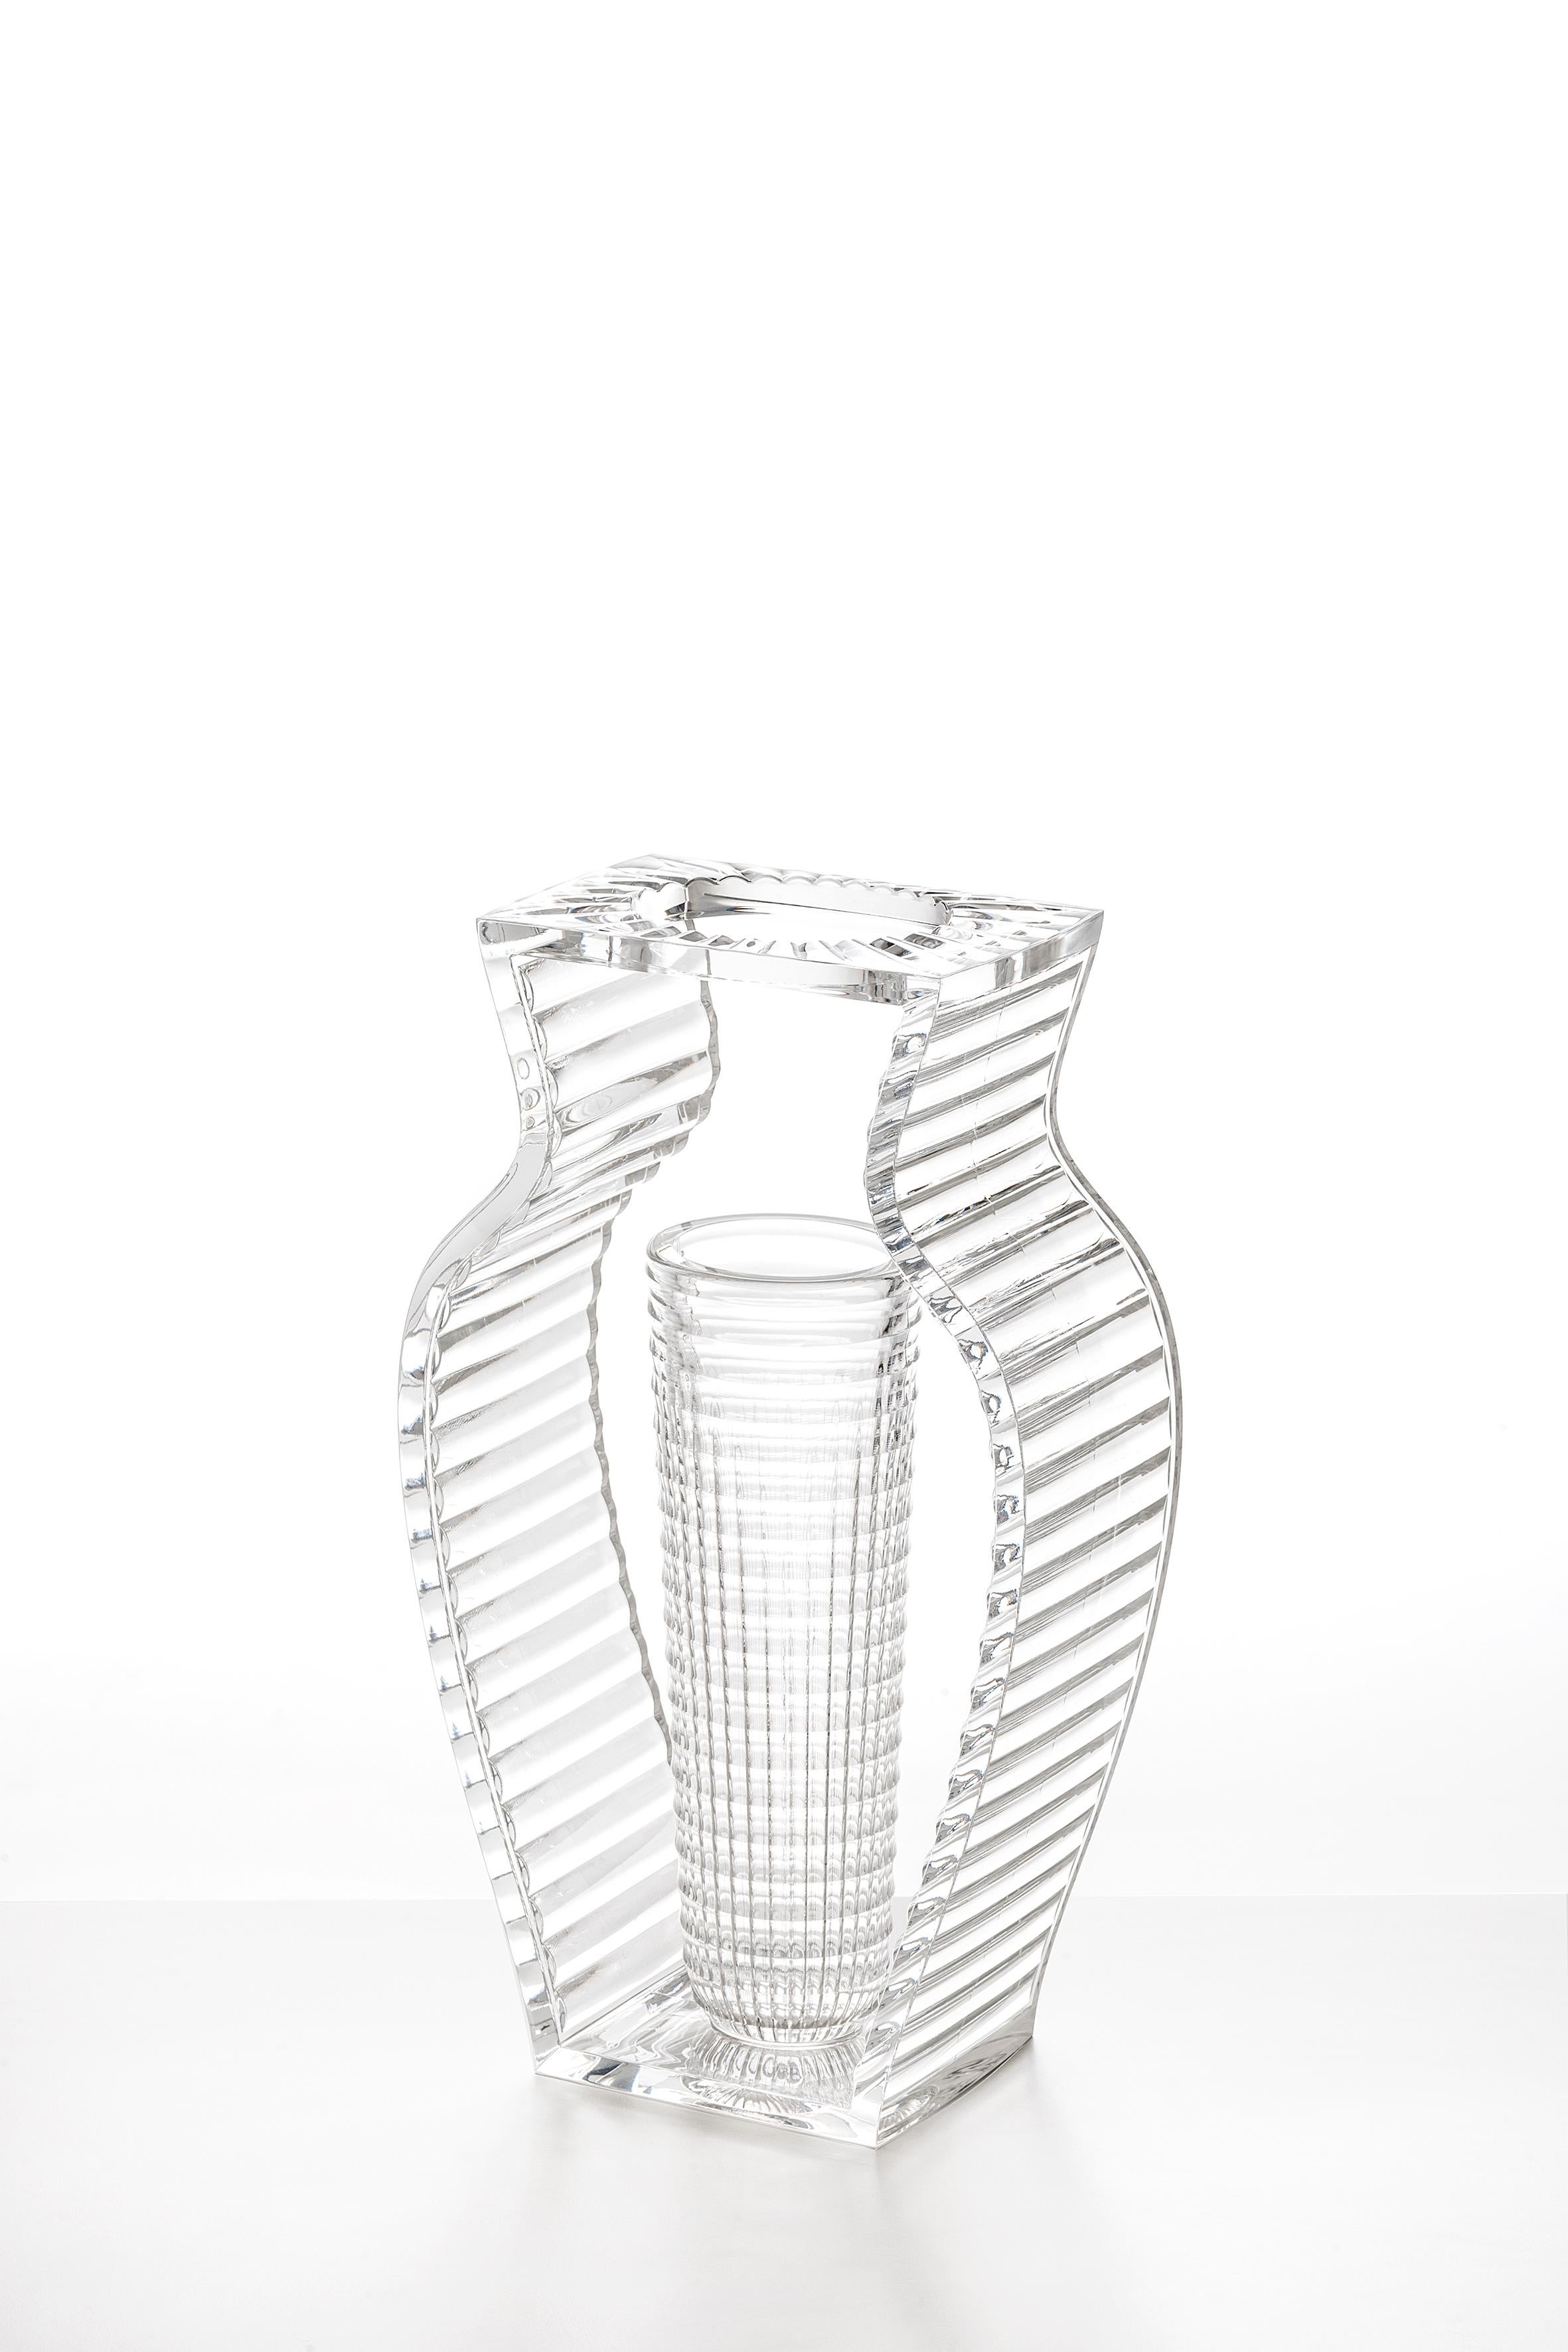 Eugeni Quitllet entwirft eine wertvolle Kollektion von dekorativen Vasen aus transparentem PMMA. Die Linie besteht aus einer Vase und einem Tischaufsatz, die sich durch ihre elegante Geometrie und ihre Art-Déco-Inspiration auszeichnen. Die